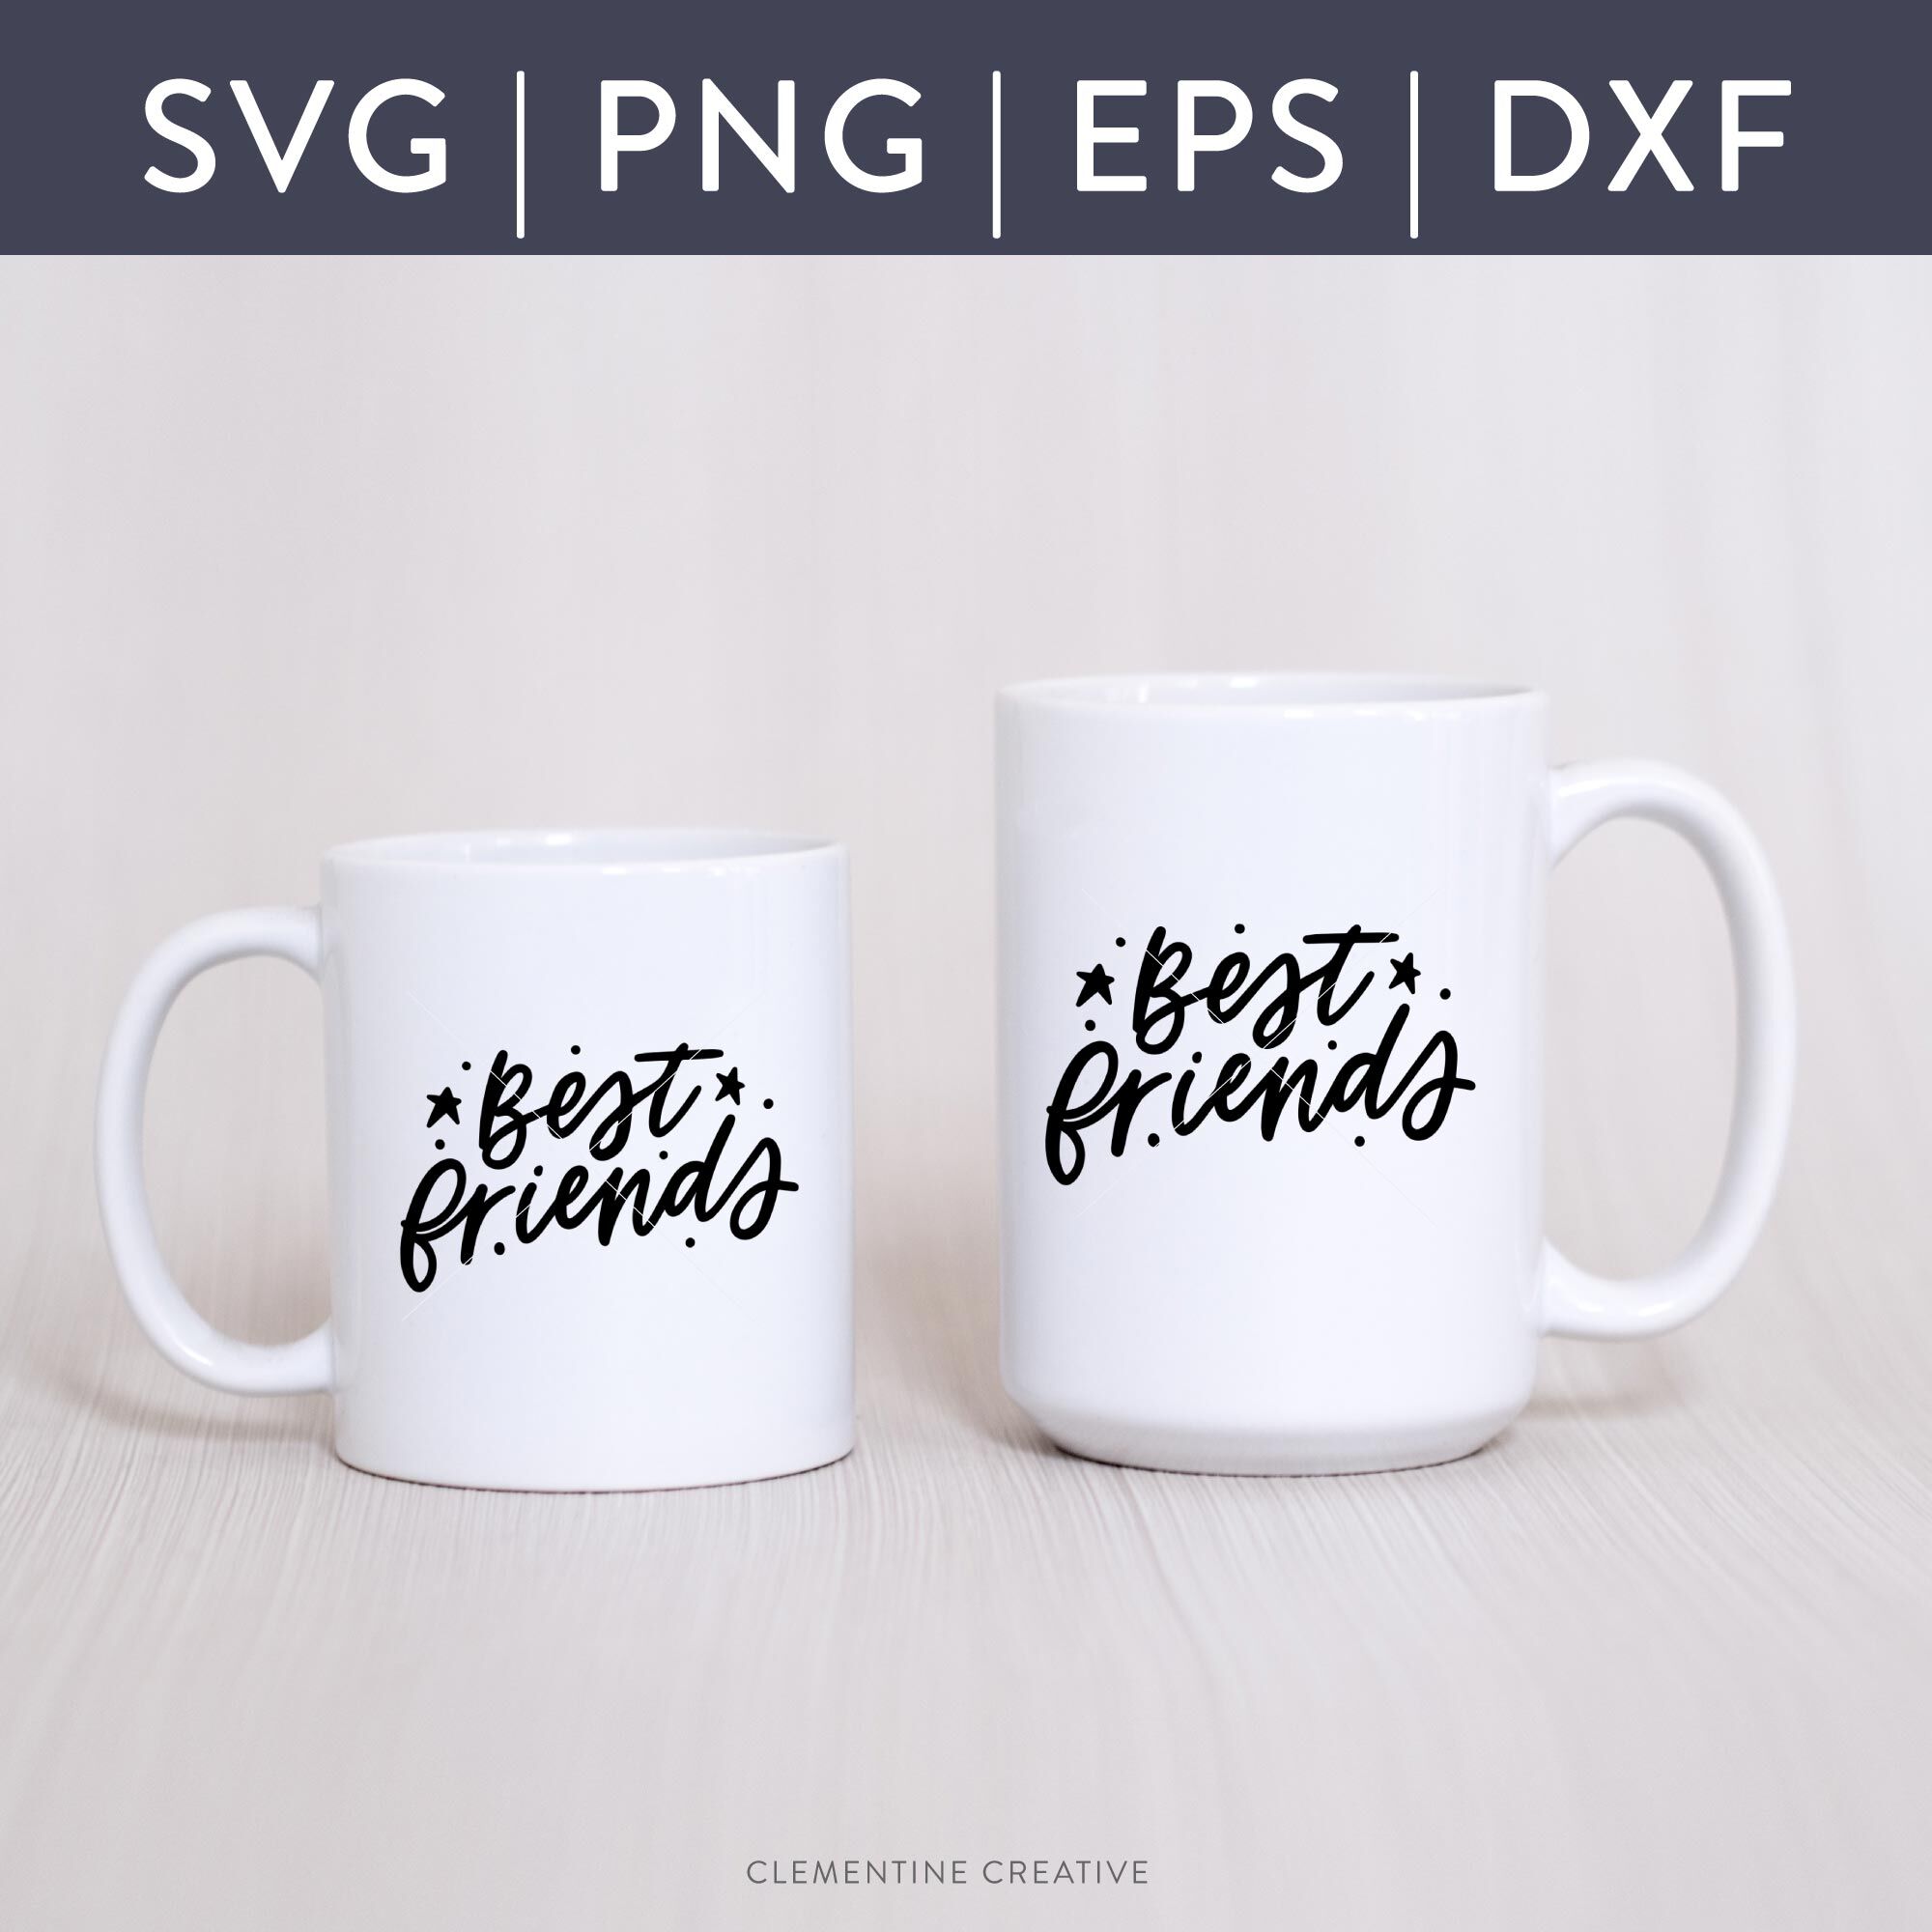 Best Friends SVG | Best Friends Cut File {SVG, Dxf, Eps ...